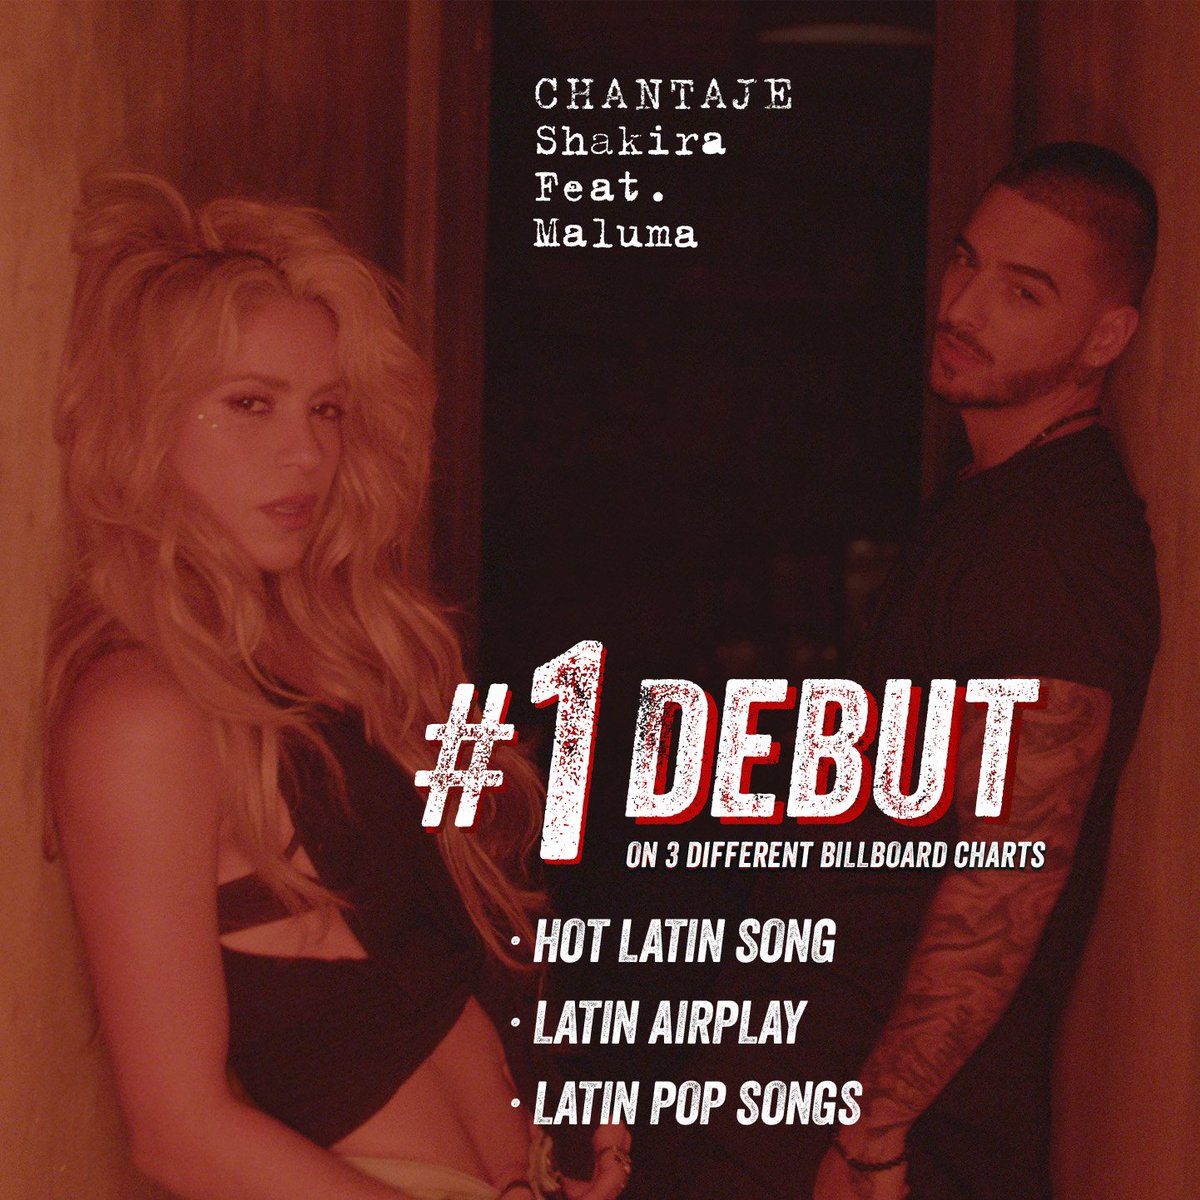 El nuevo sencillo de Shakira, #Chantaje con @maluma, debuta en @Billboard en lo más alto! ShakHQ https://t.co/xCHgZ1Sei9